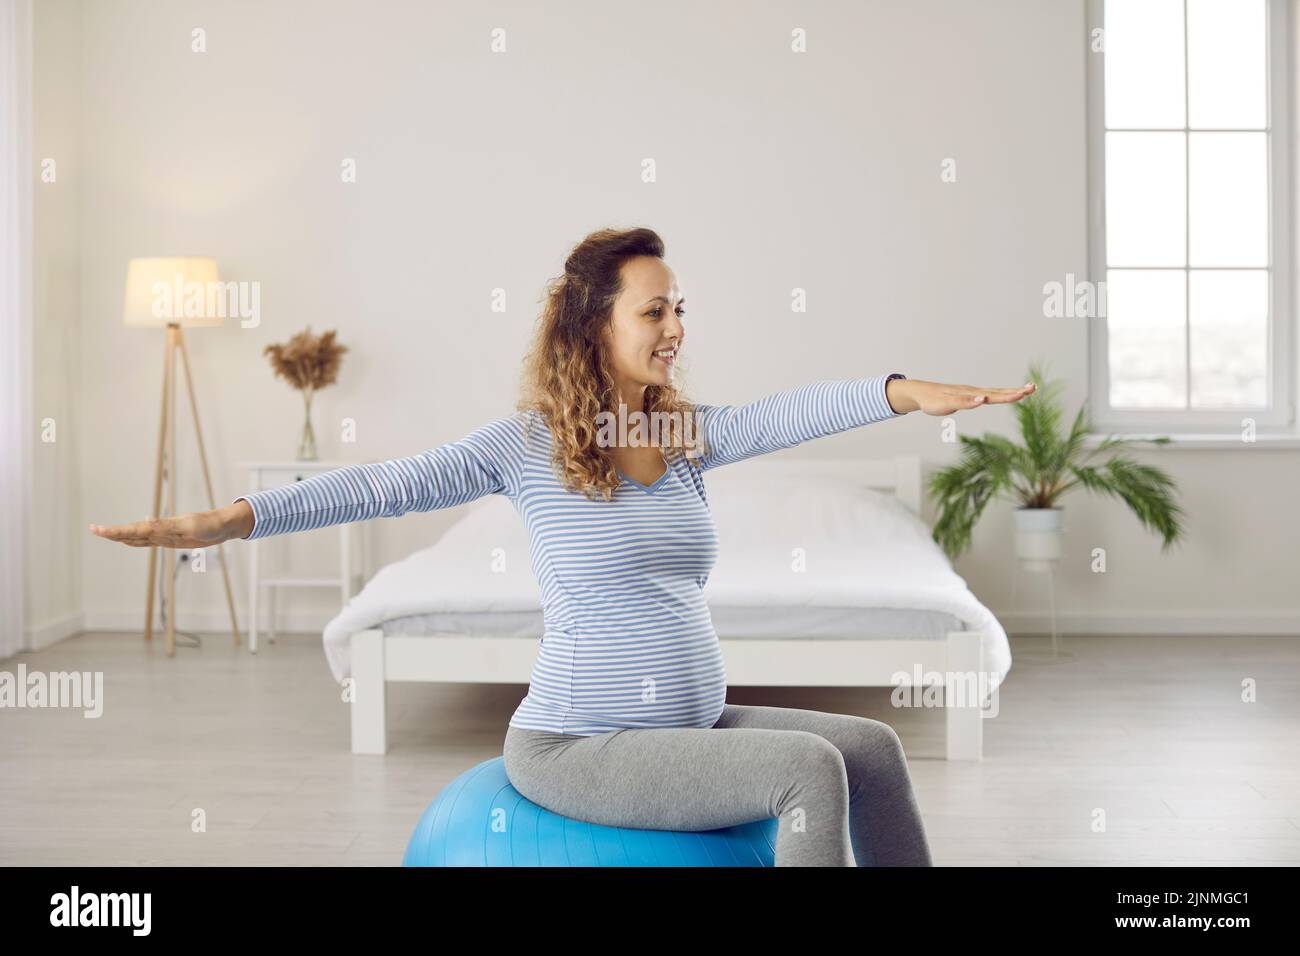 Mujer joven feliz y saludable haciendo ejercicios de gimnasia con una pelota de yoga durante el embarazo Foto de stock